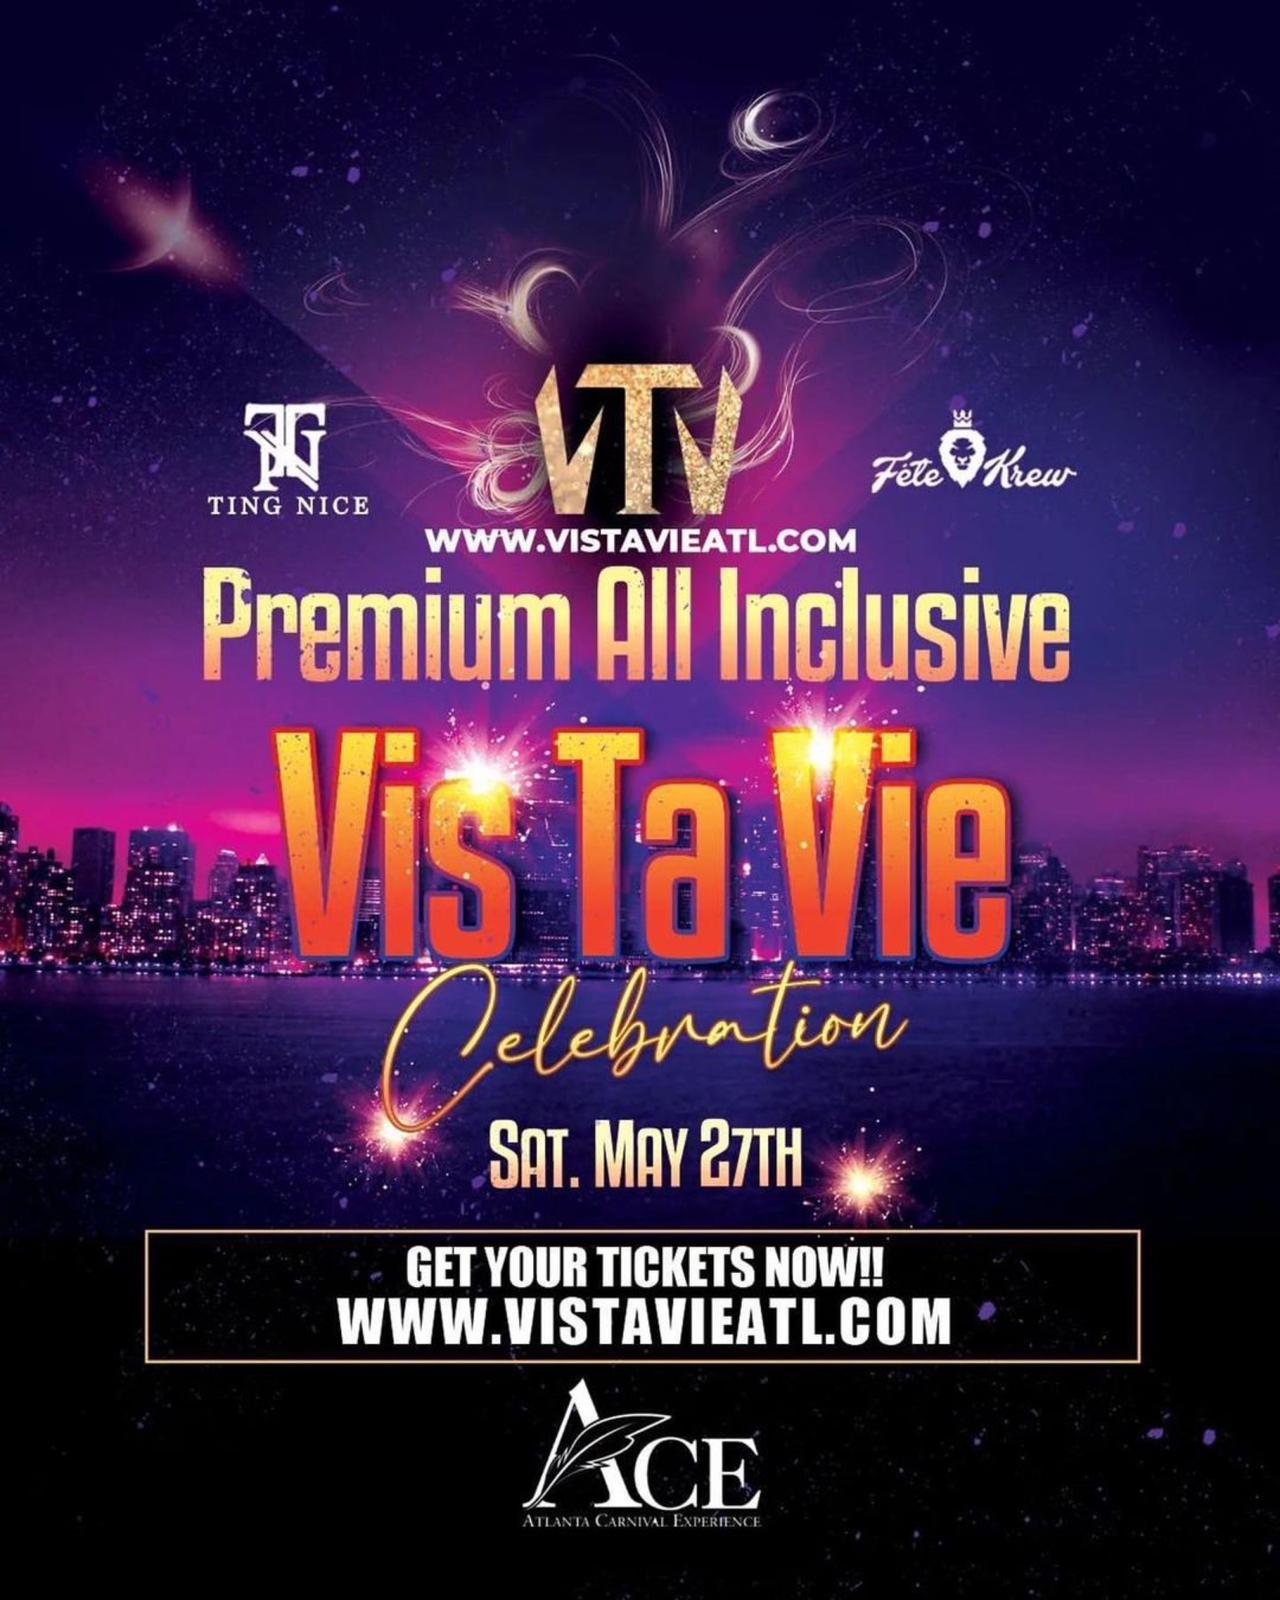 Atlanta Carnival Experience (ACE) - Vis Ta Vie Premium All Inclusive